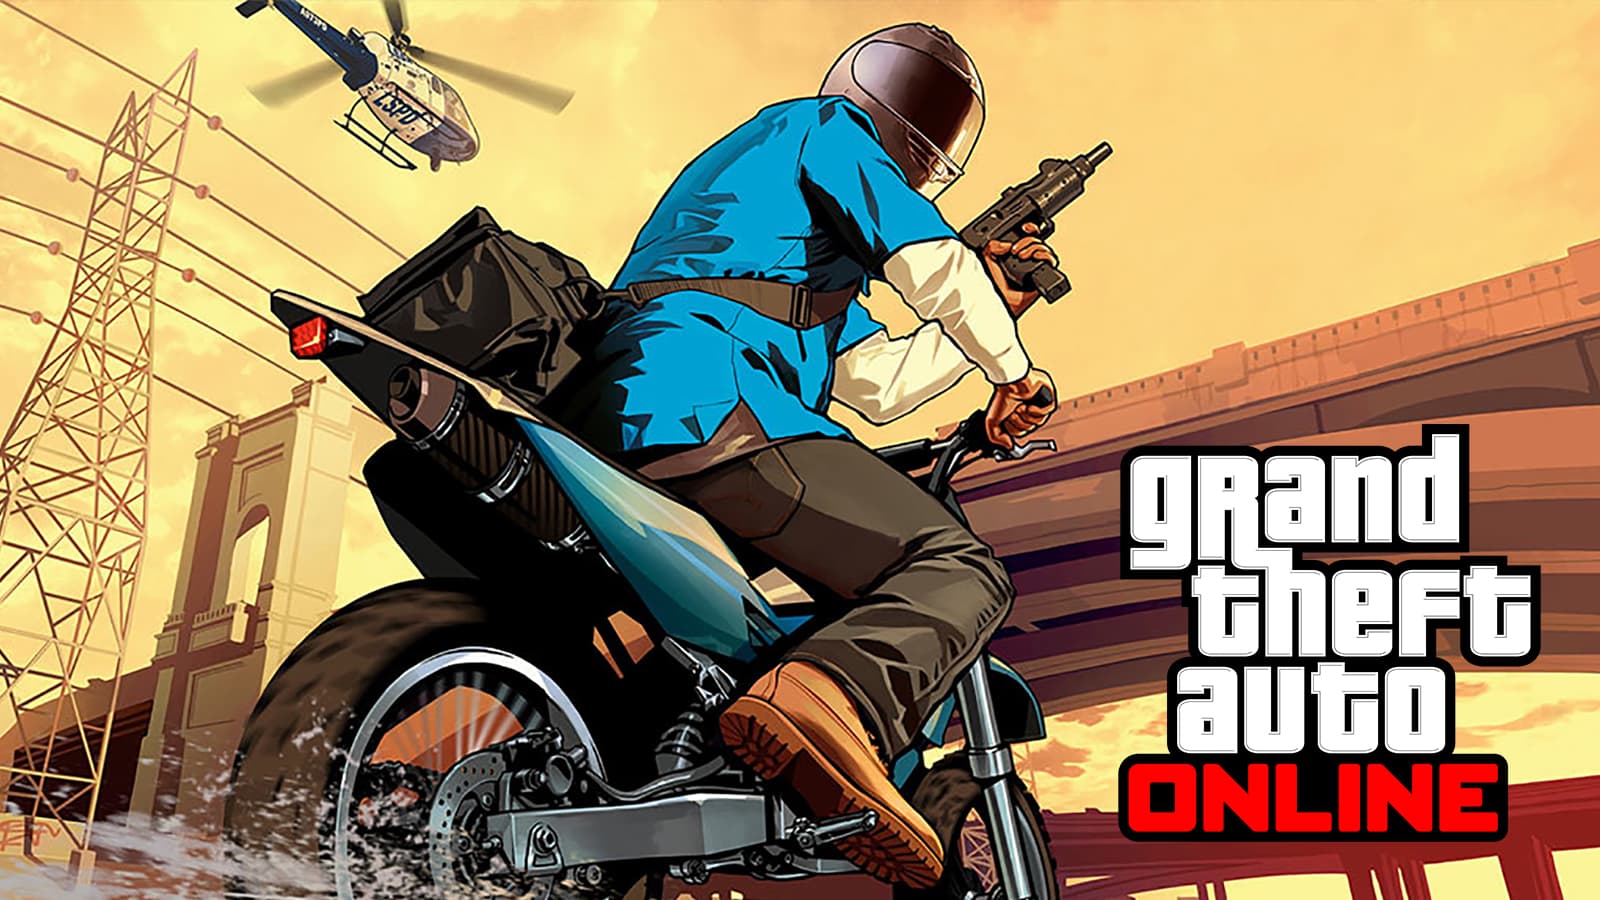 Ein Bild des GTA Online-Logos und Artworks mit einem Spieler auf einem Motorrad